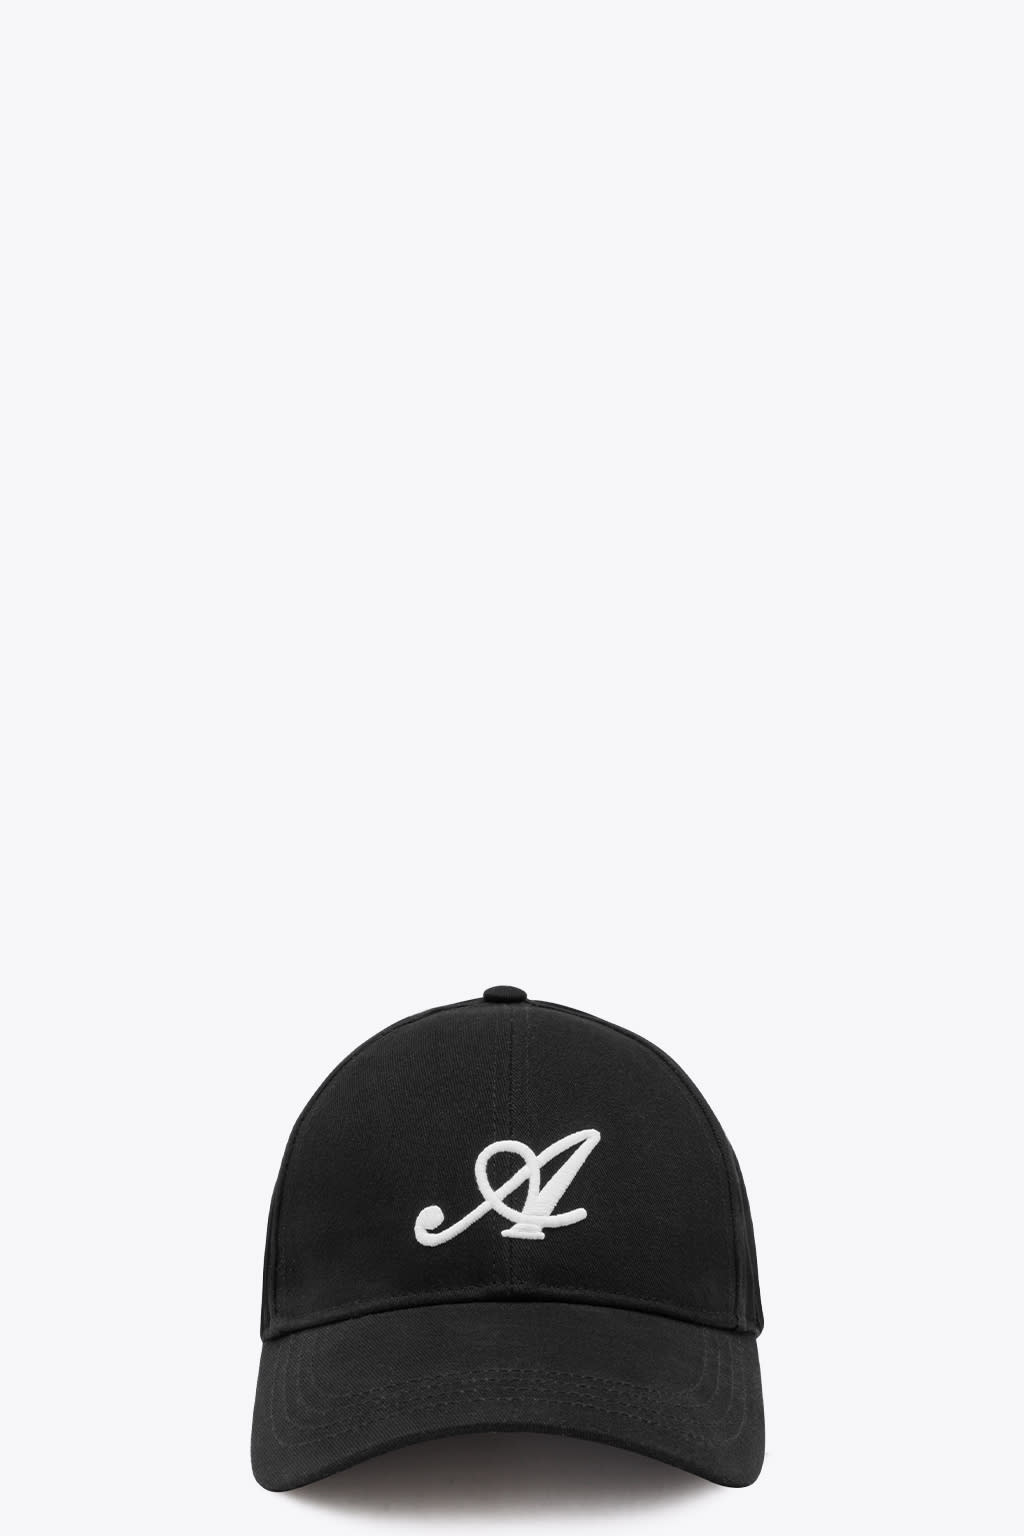 AXEL ARIGATO SIGNATURE CAP BLACK COTTON CAP WITH LOGO - SIGNATURE CAP